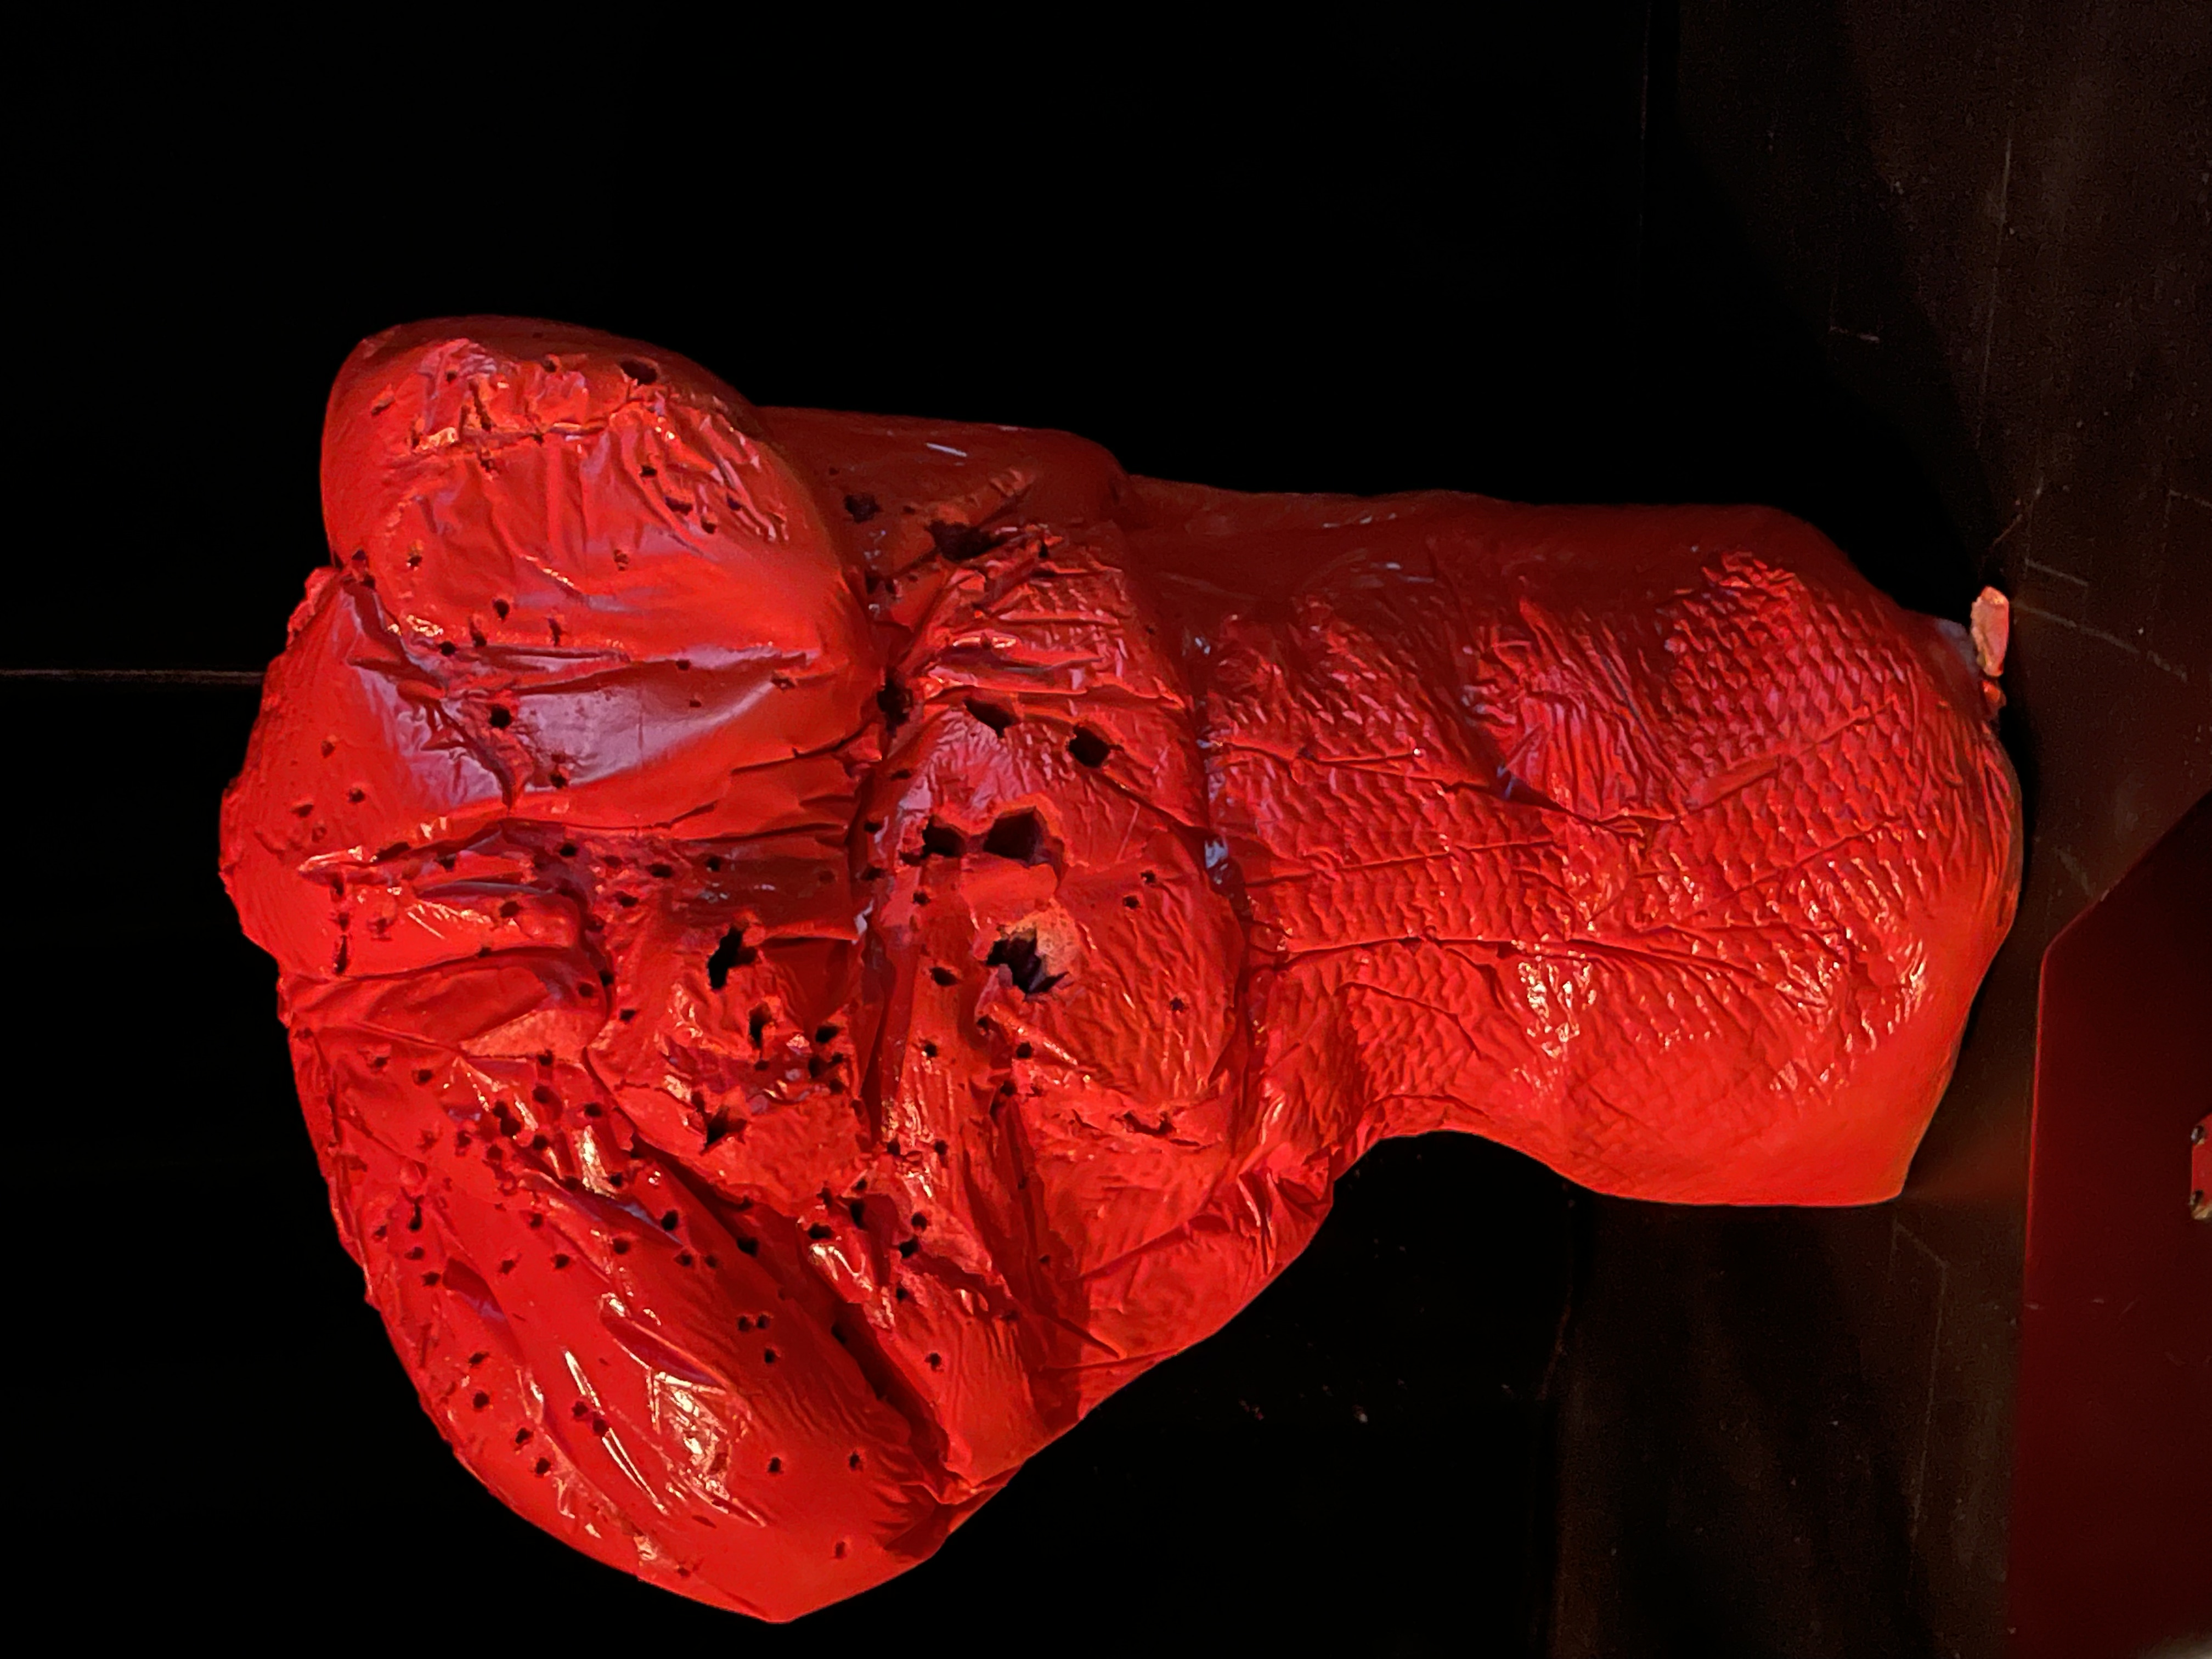 Cette phot montre la sculpture d'un buste rouge troué.